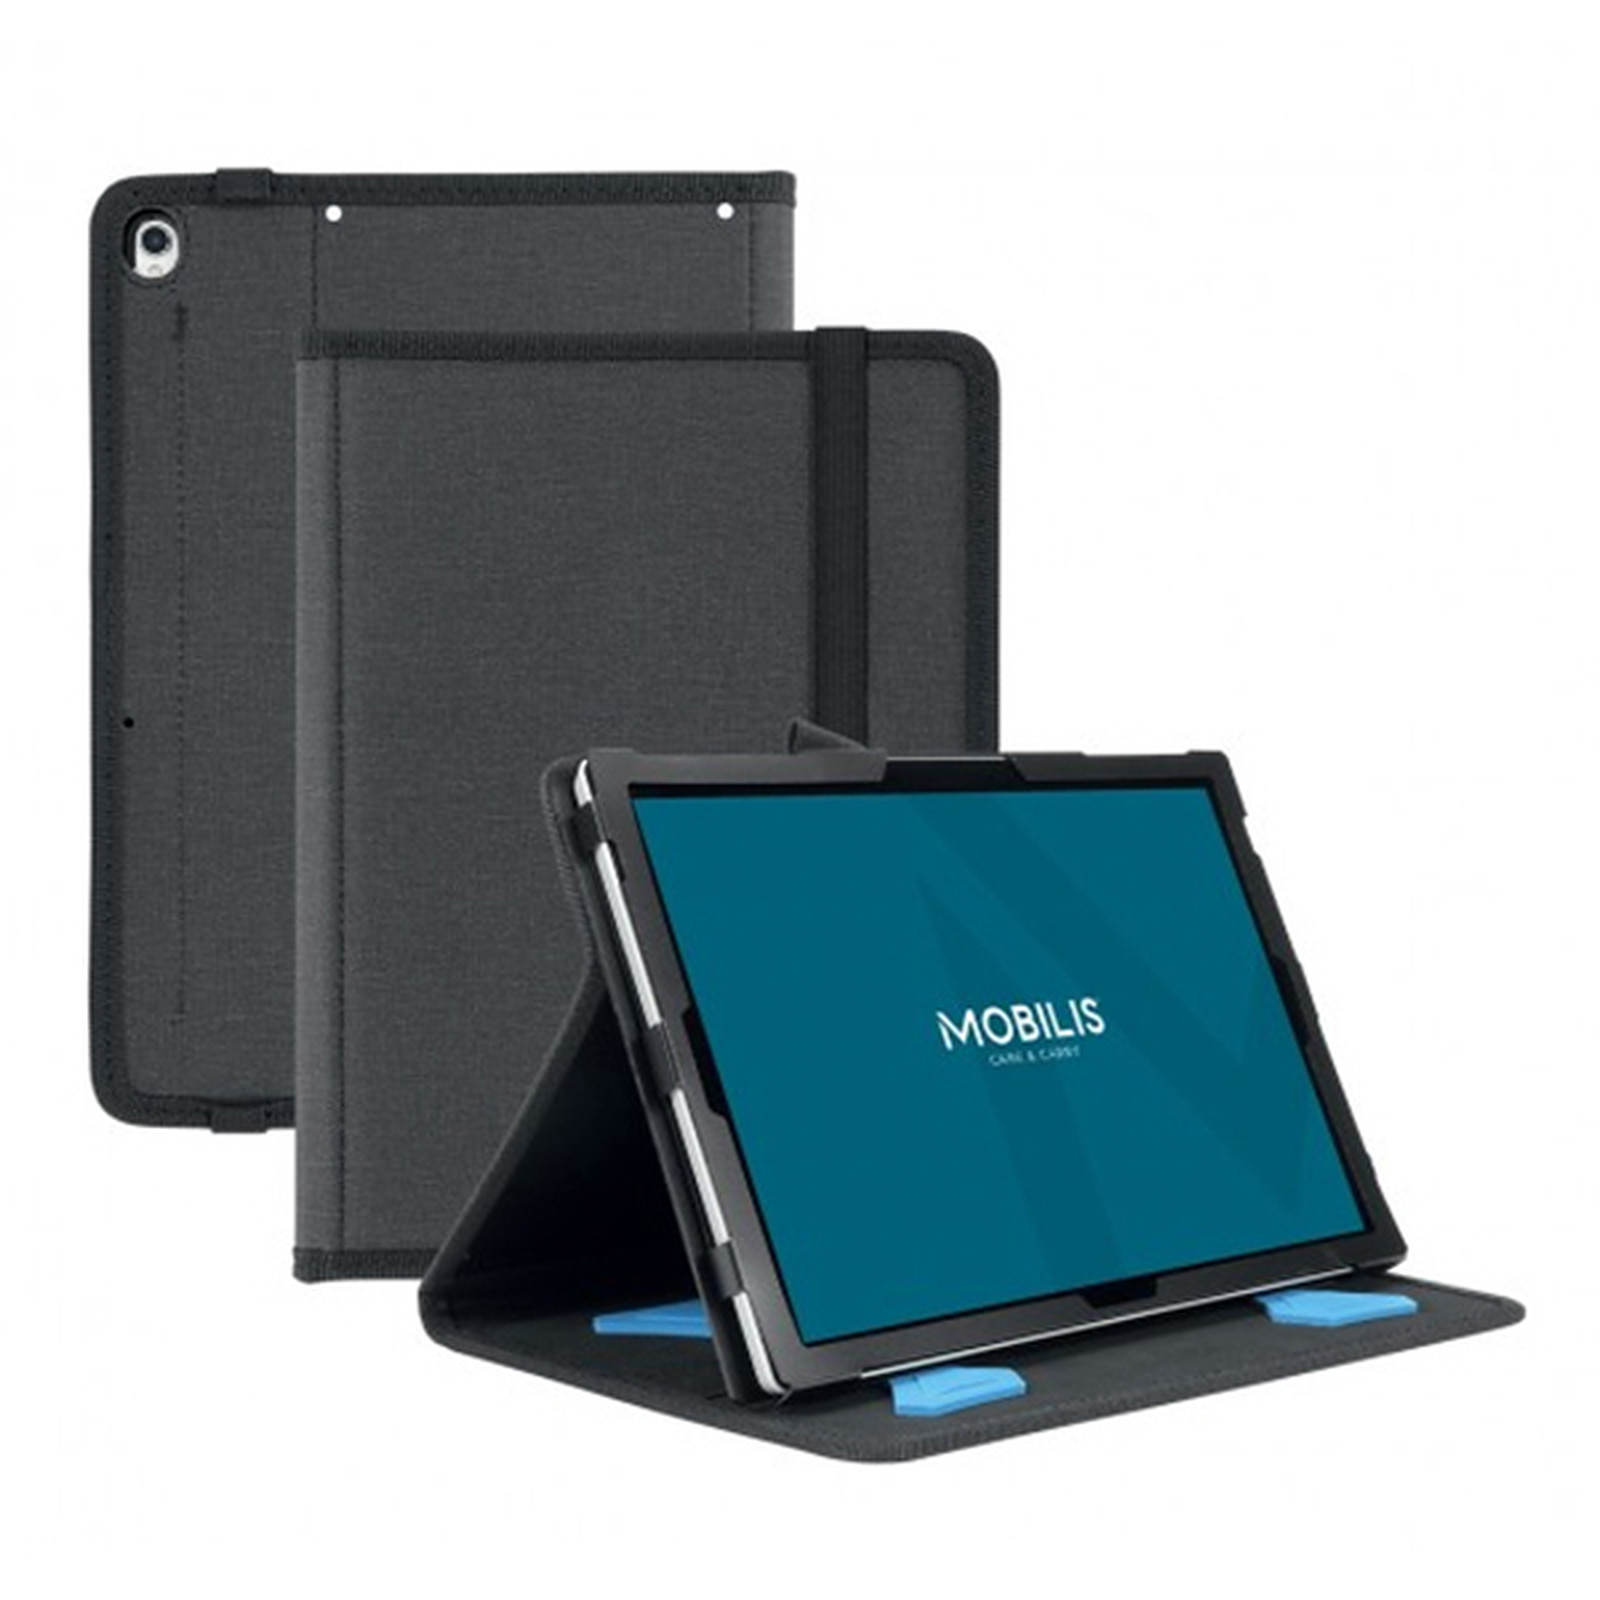 Mobilis Active Pack Case pour iPad mini (2021) - Noir - Etui tablette Mobilis